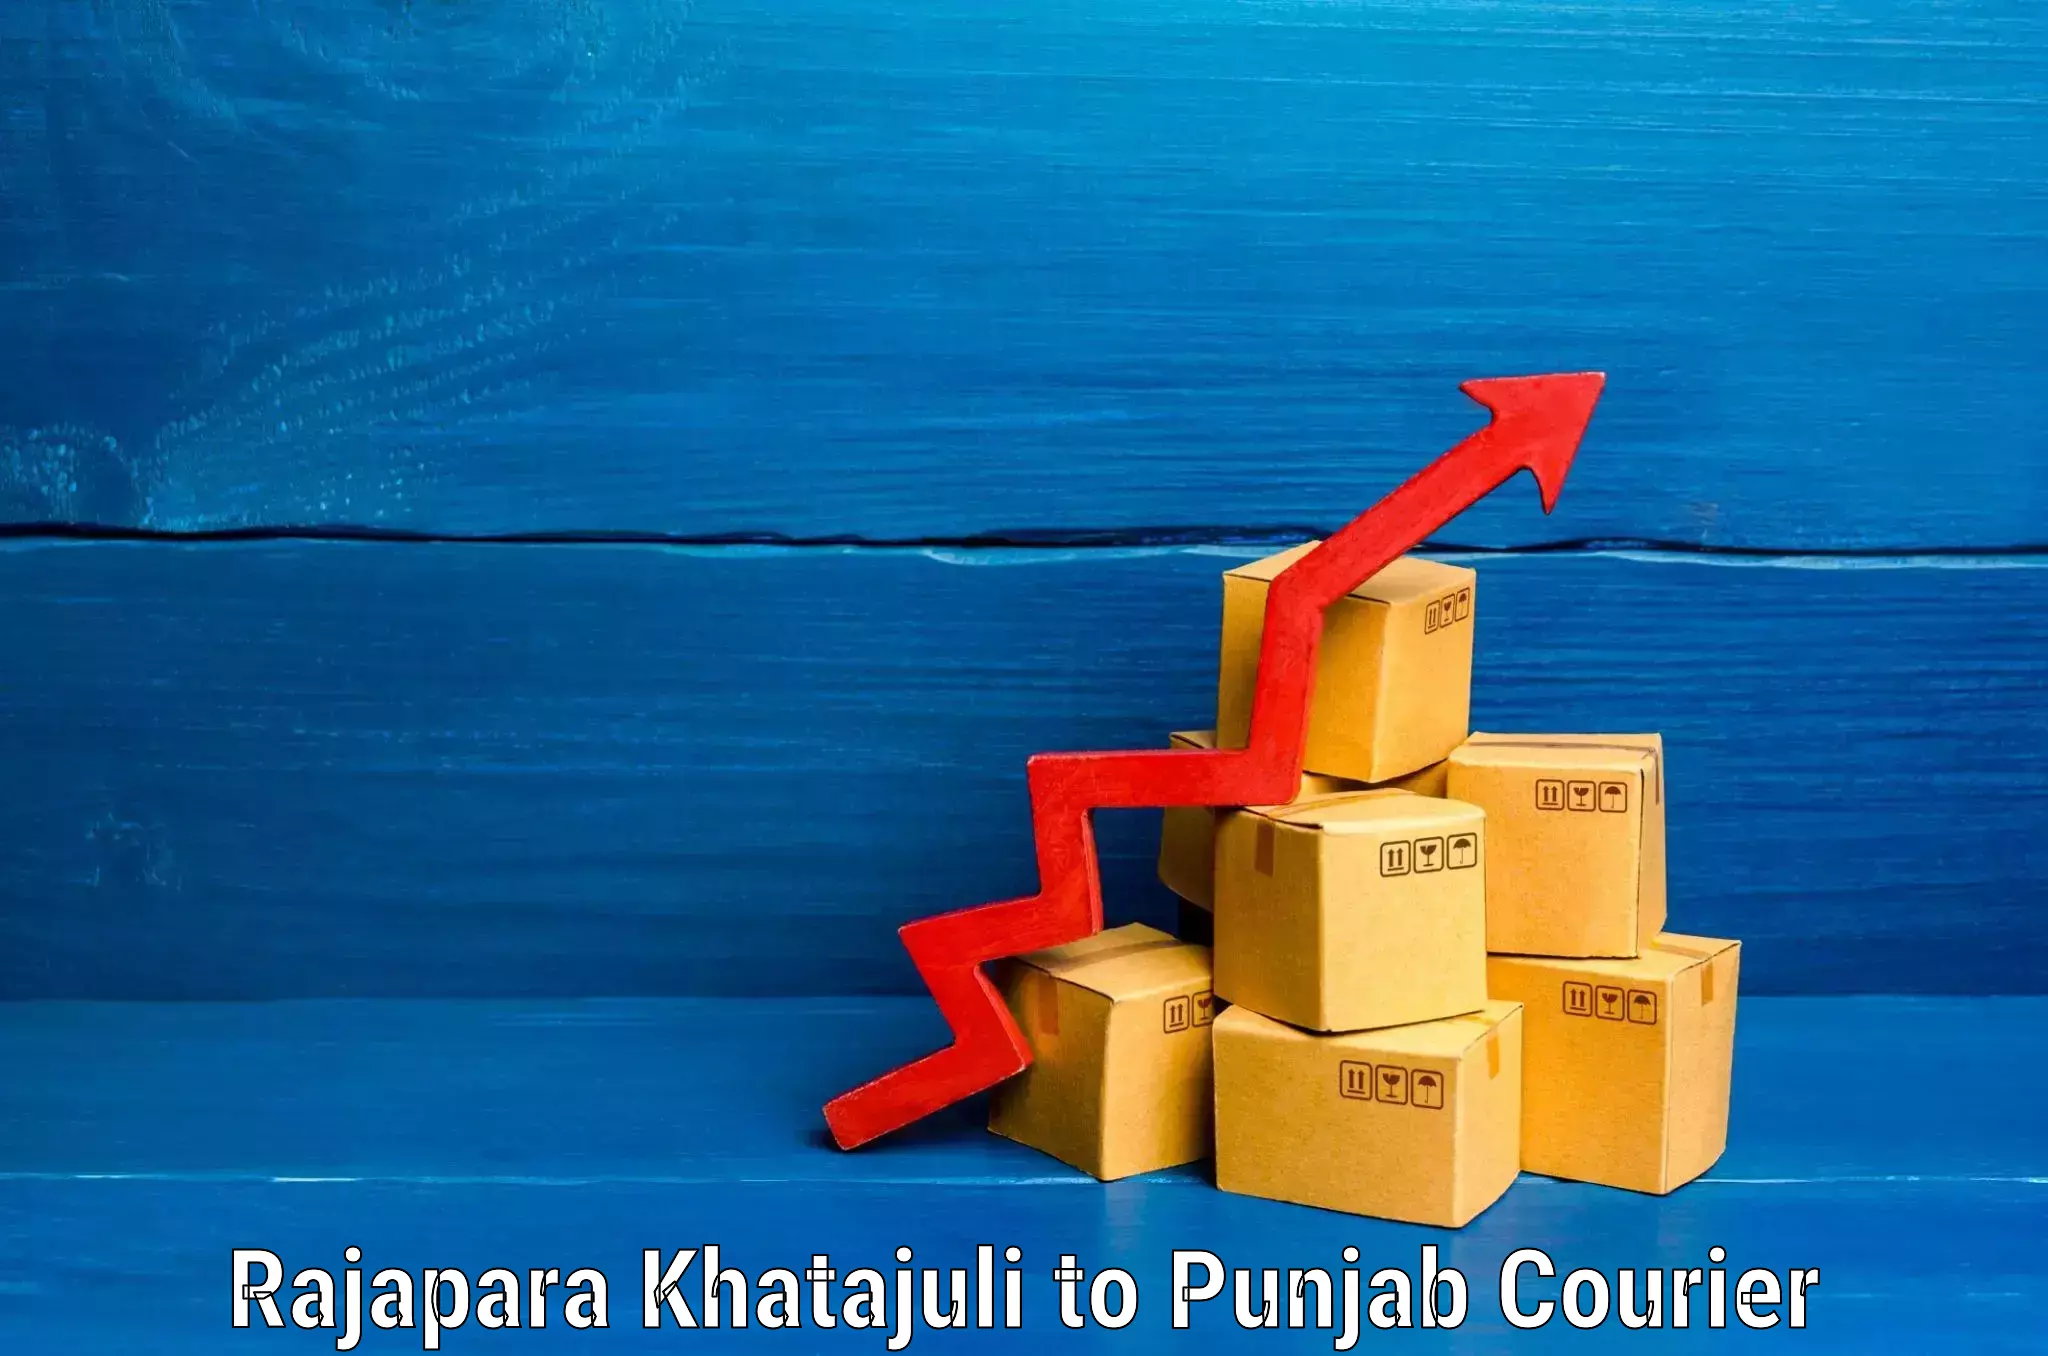 Luggage shipment specialists Rajapara Khatajuli to Punjab